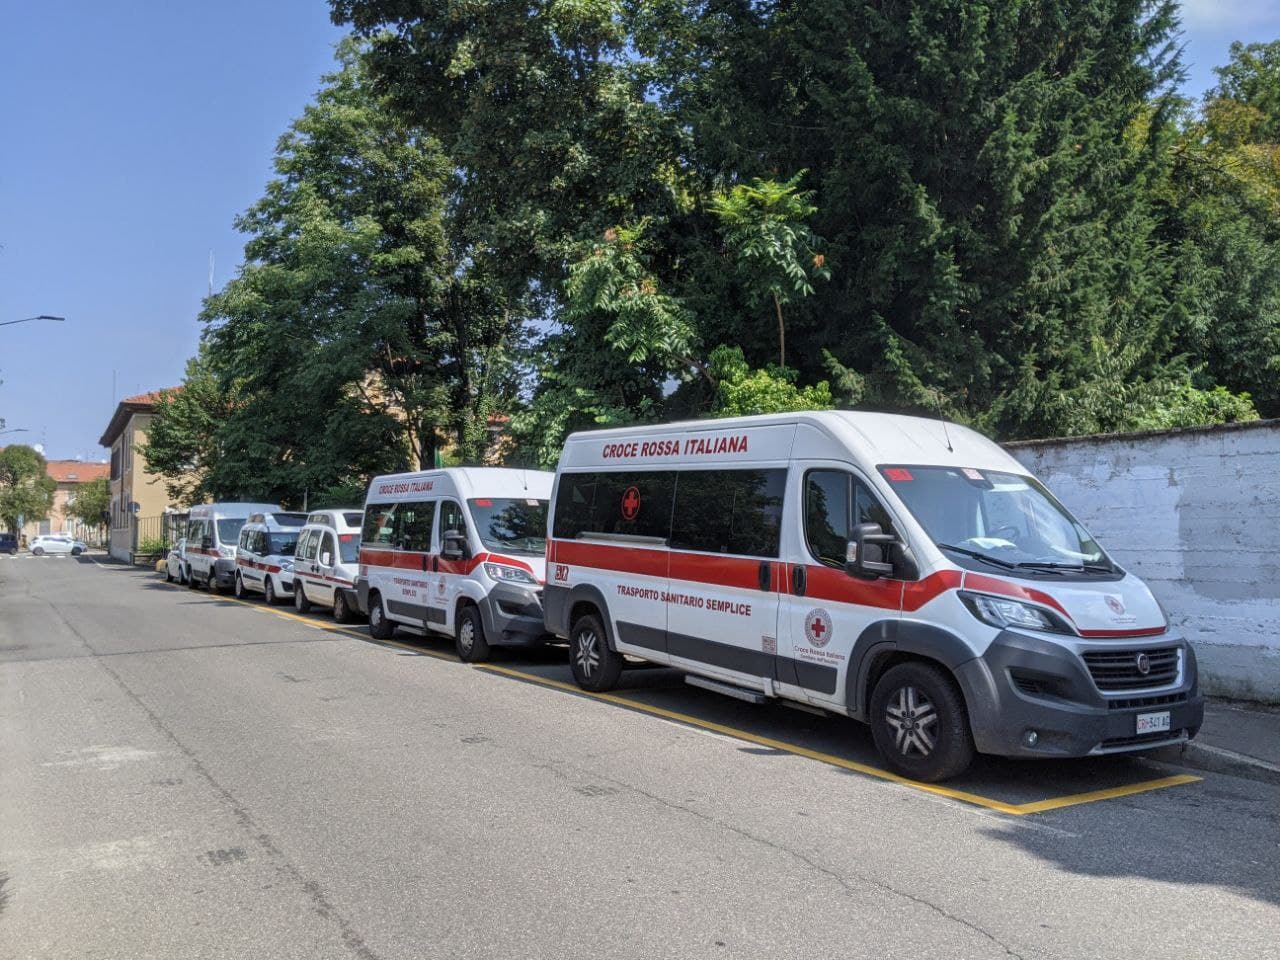 “Perchè ci sono 6 mezzi della Croce Rossa in sosta in via Cesati?”